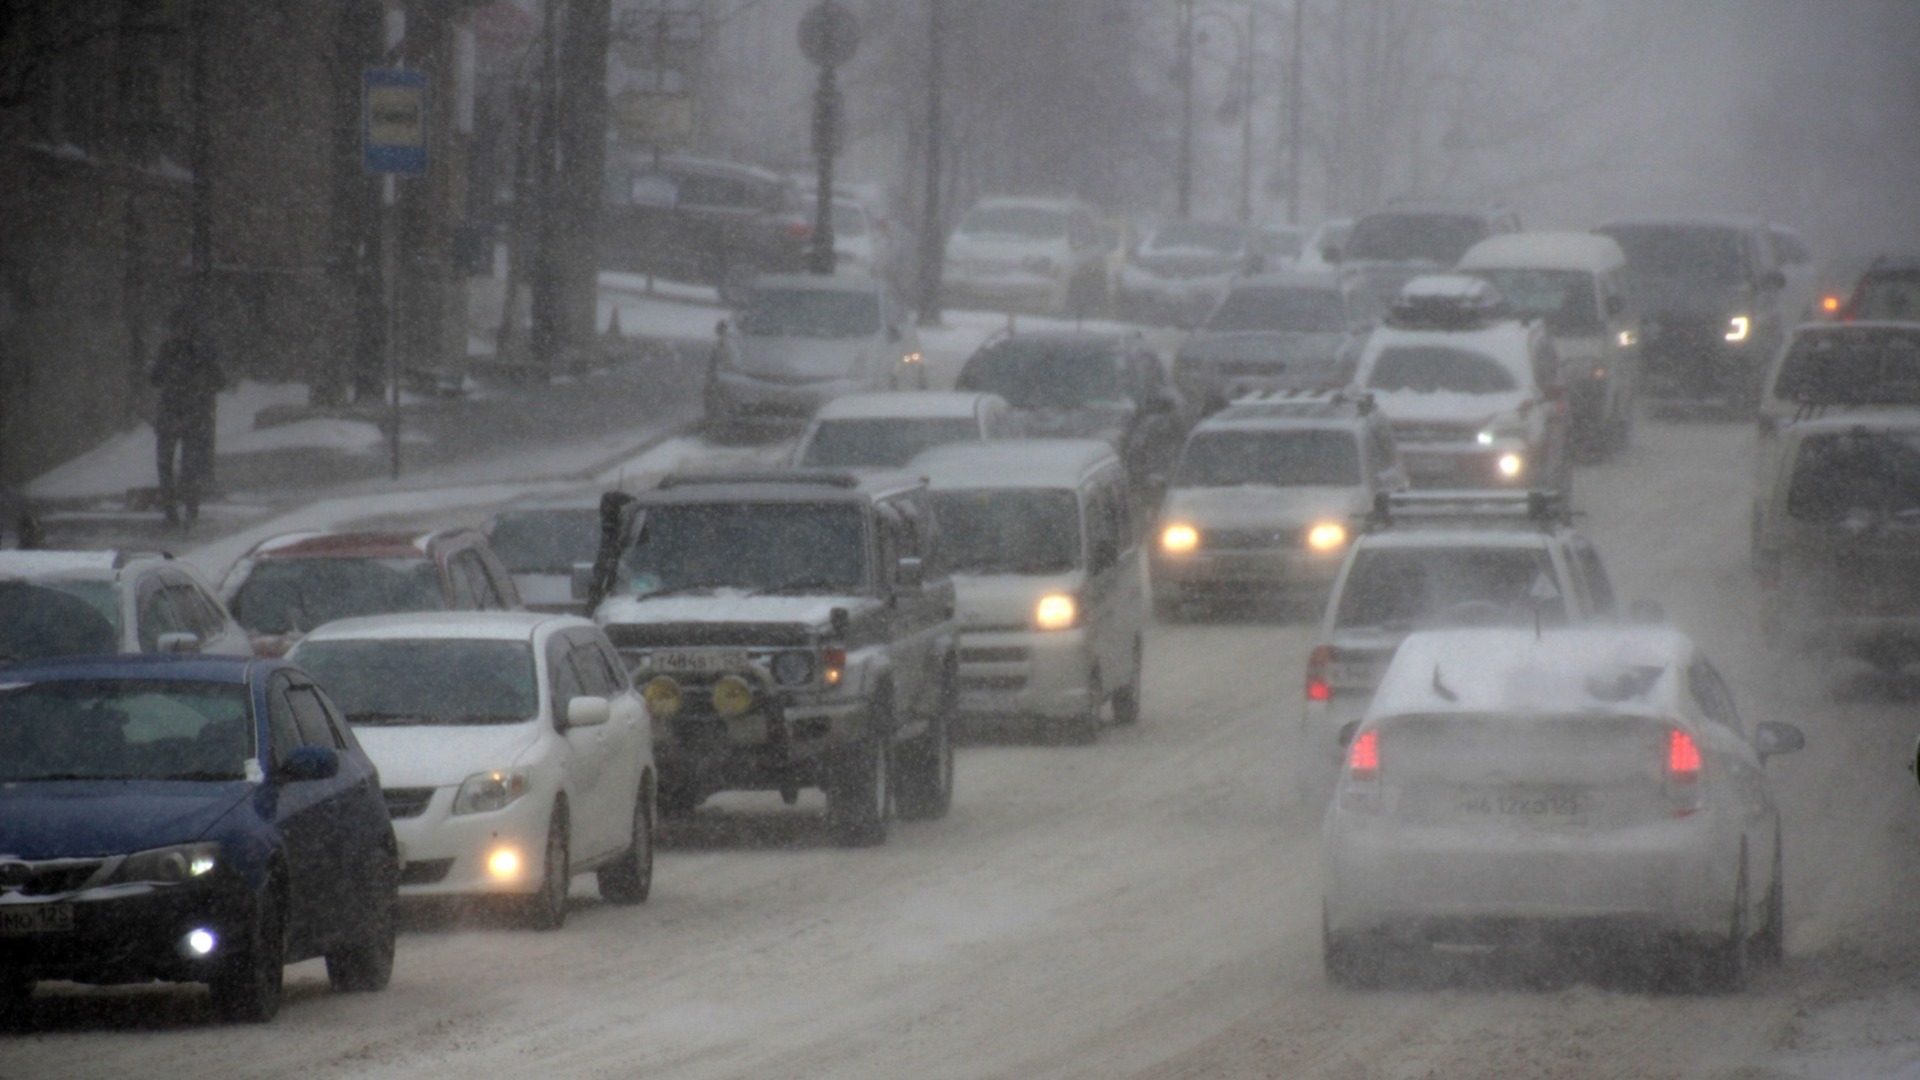 Циклон начал свирепствовать в регионе: снегопад и гололедица пришли в Приморье